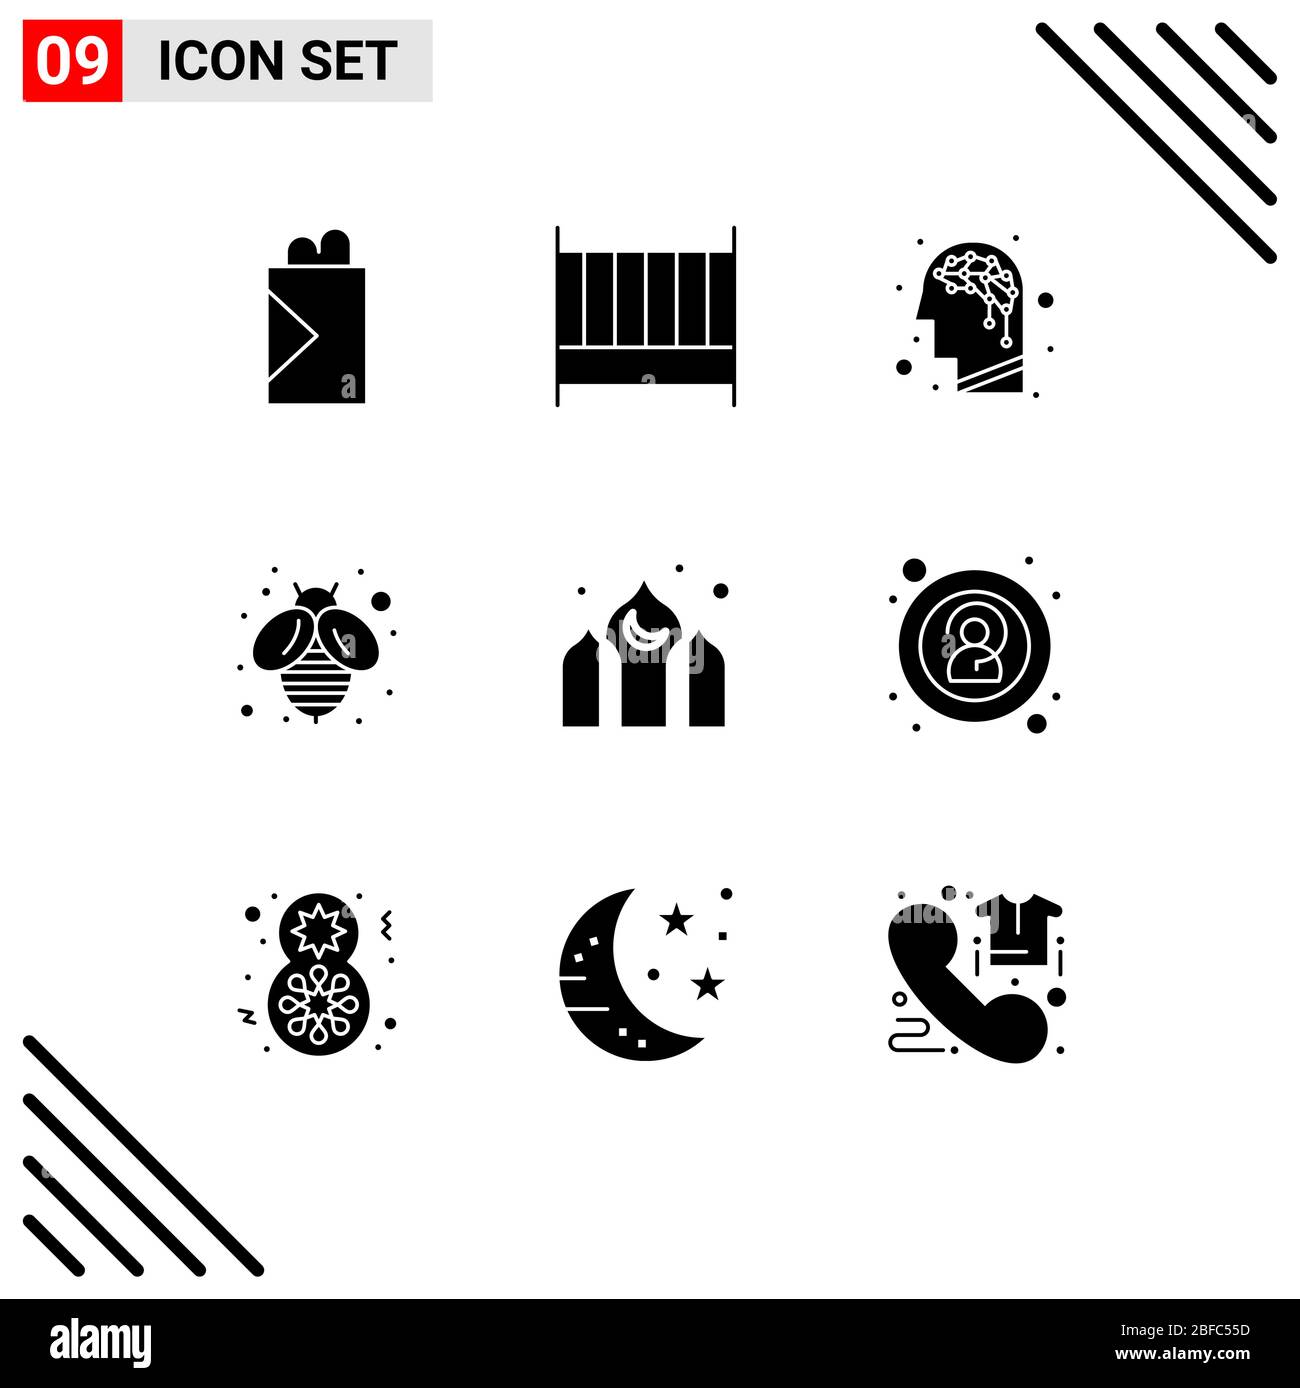 Modernes Set von 9 festen Glyphen Piktogramm der Anonymität, Kareem, Gehirn, asien, Honig editierbare Vektor Design-Elemente Stock Vektor